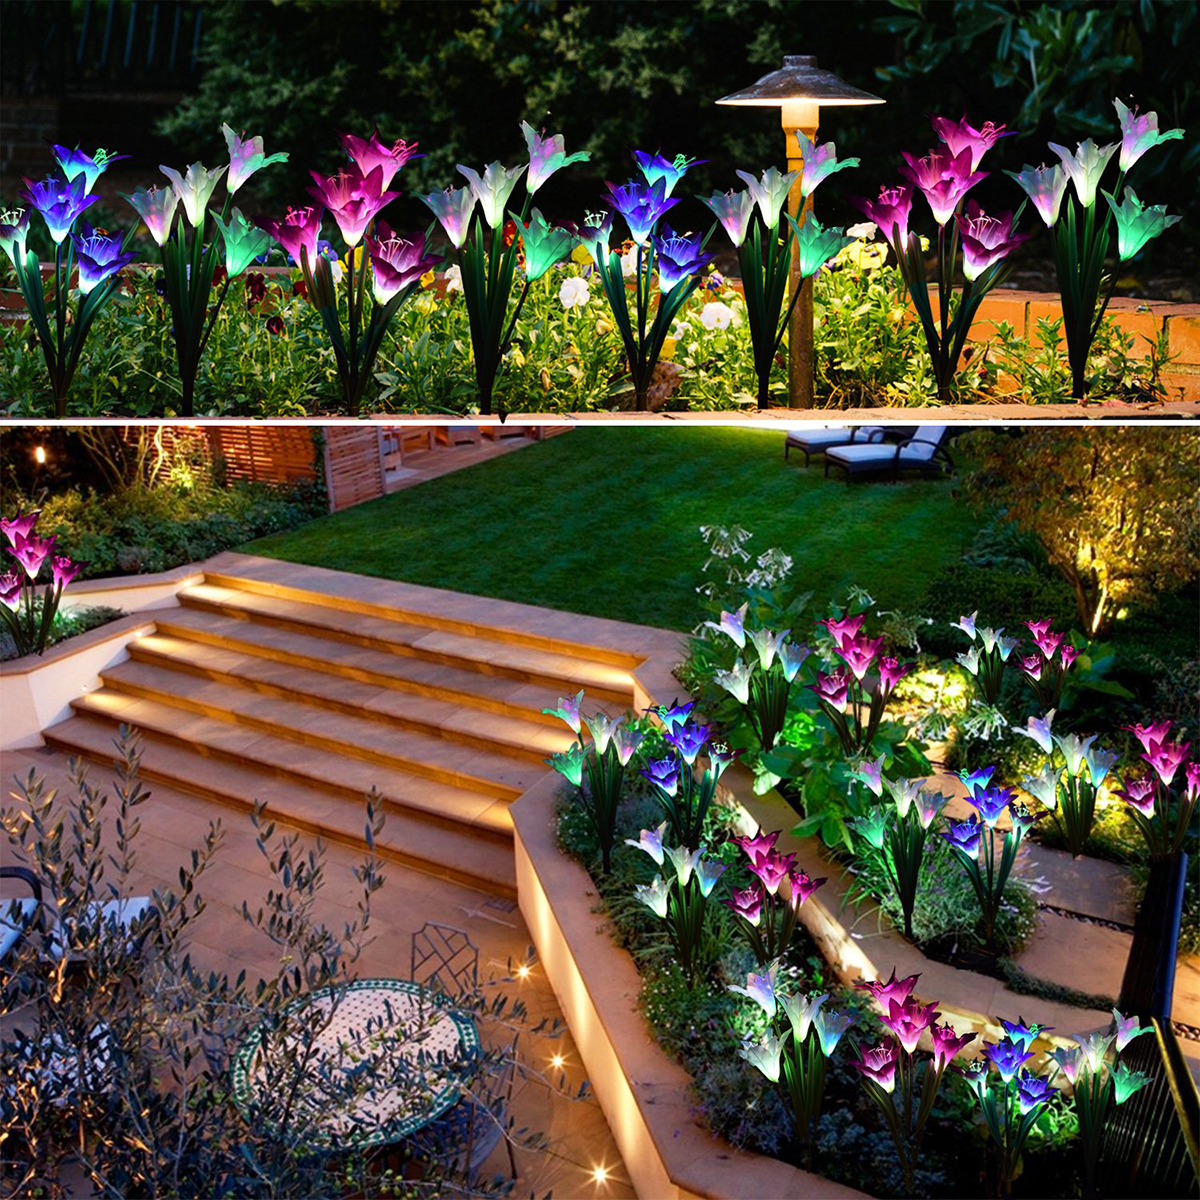 Solar-Power-Lily-Rose-Flower-Stake-Landscape-Lamp-Yard-LED-Light-Outdoor-Garden-1761626